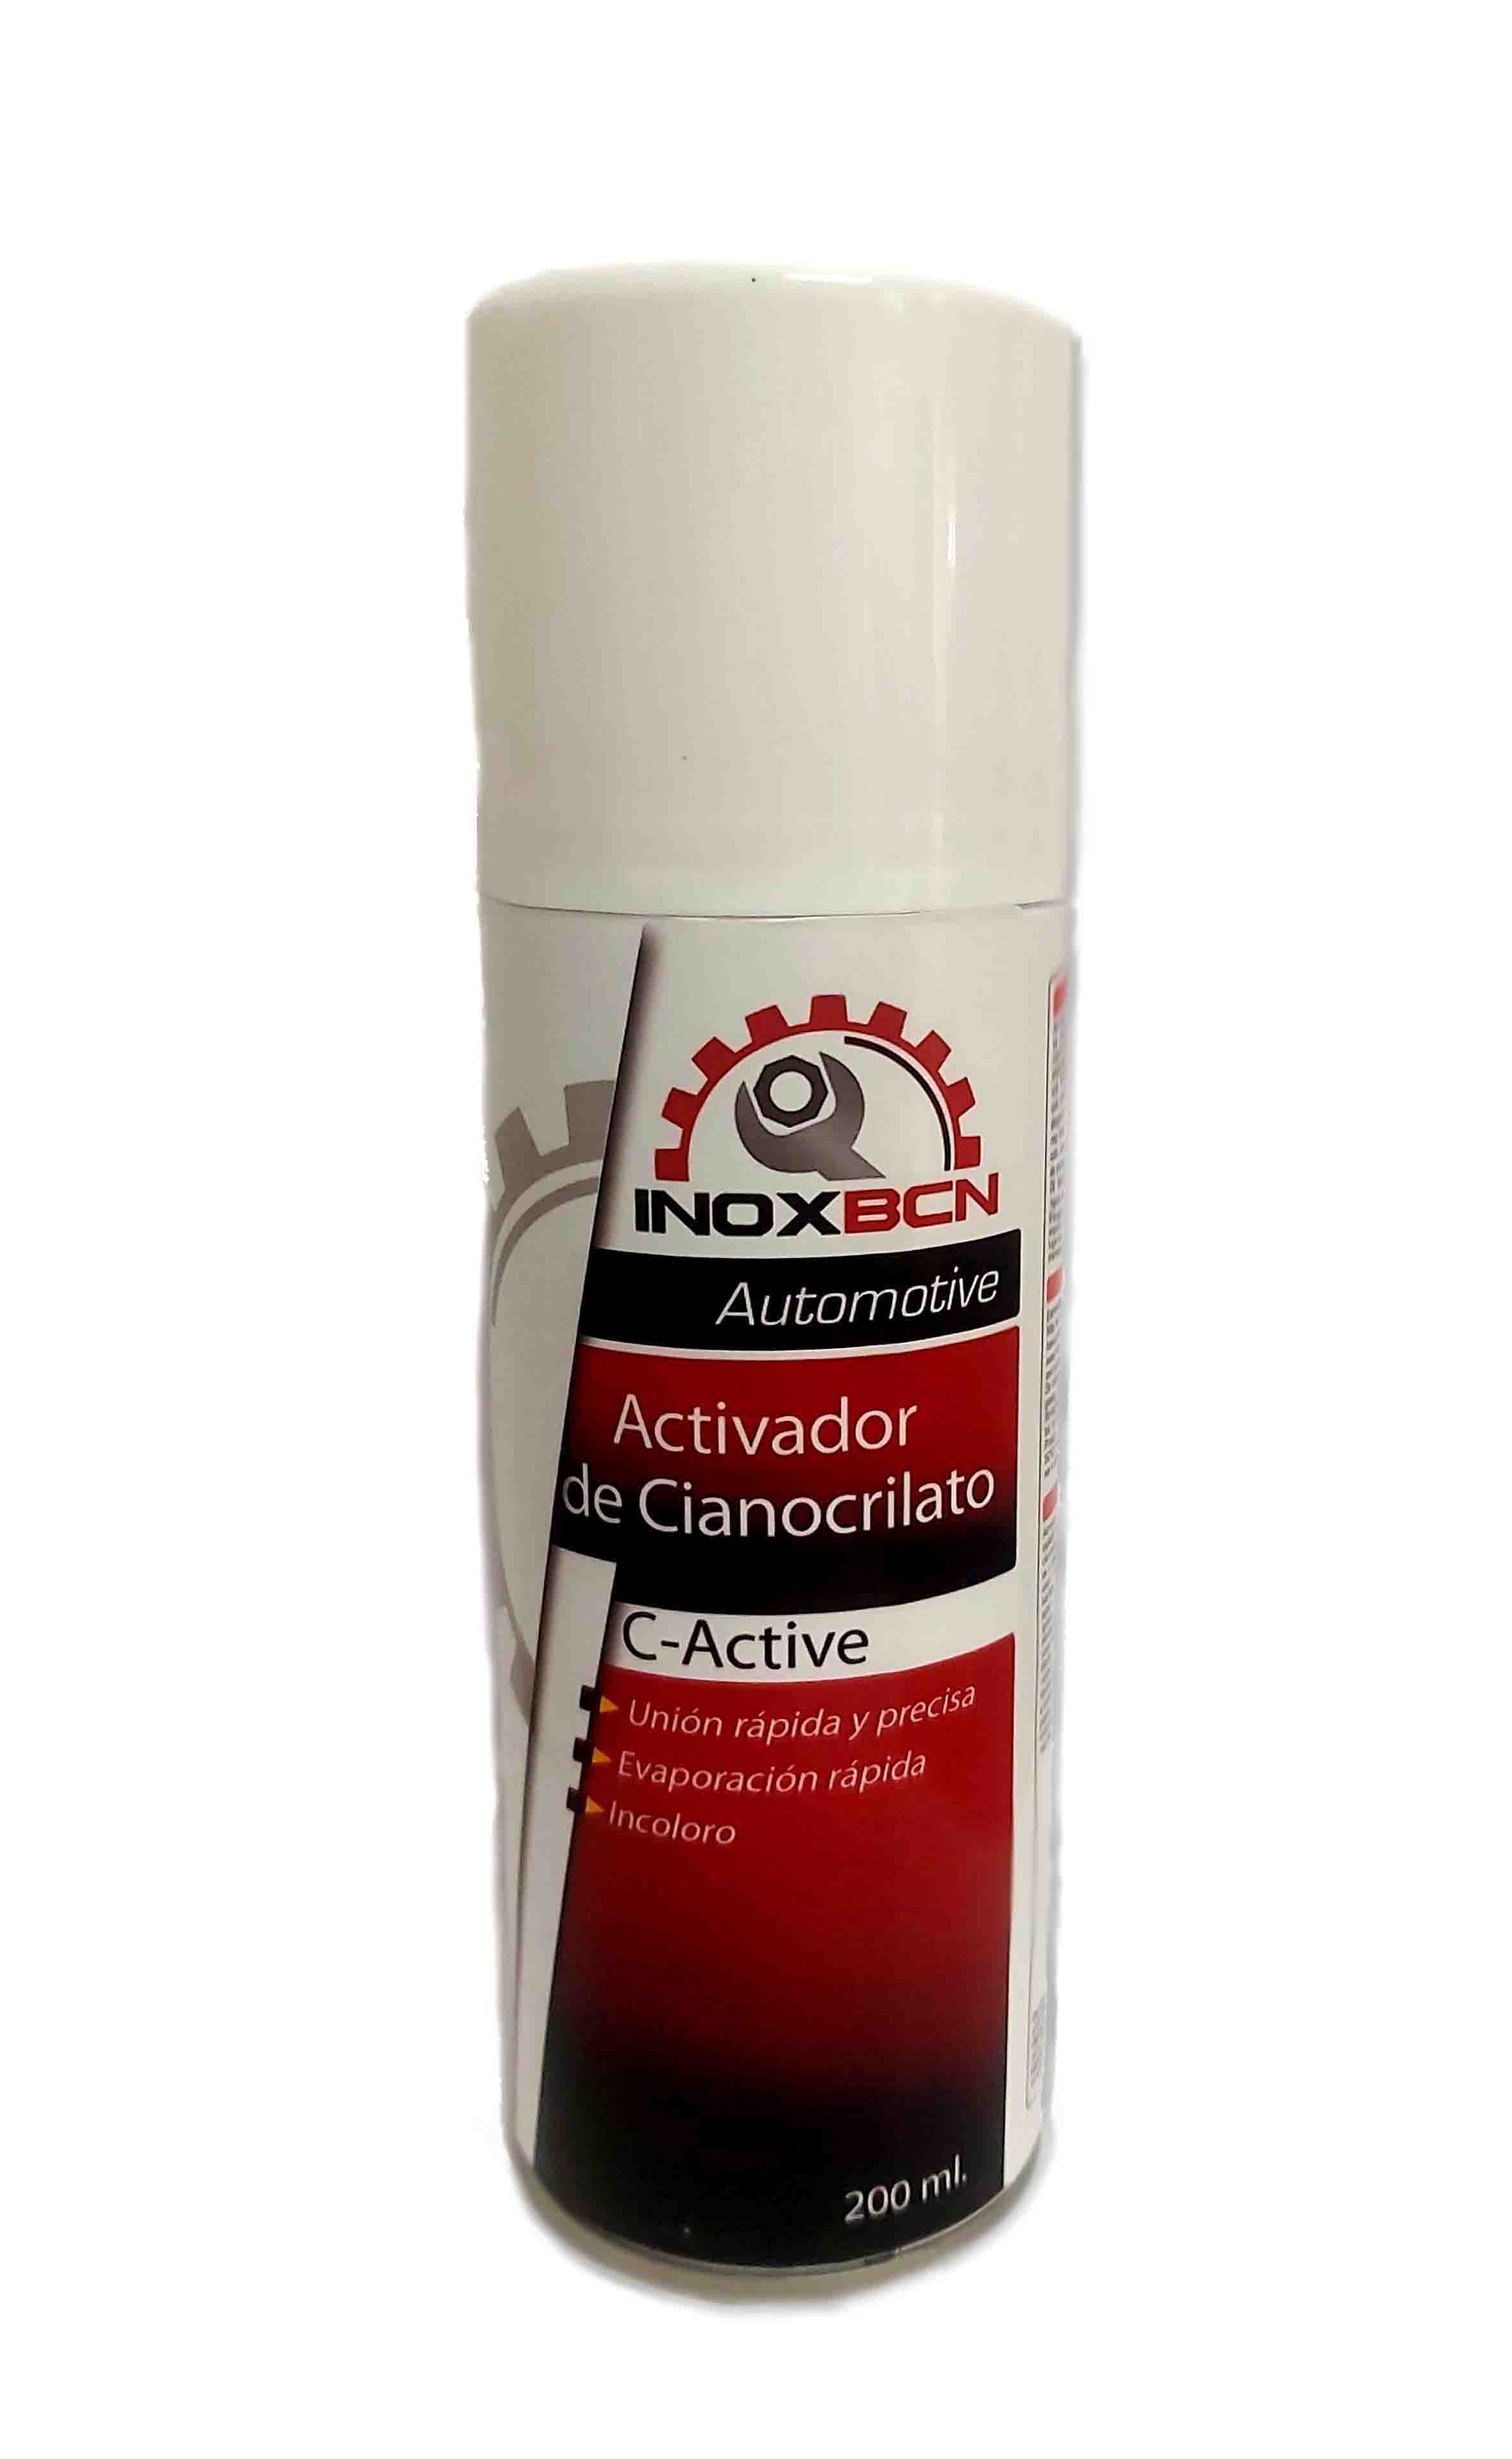 Inoxbcn Activador De Cianocrilato En Spray 200 Ml Inoxbcn